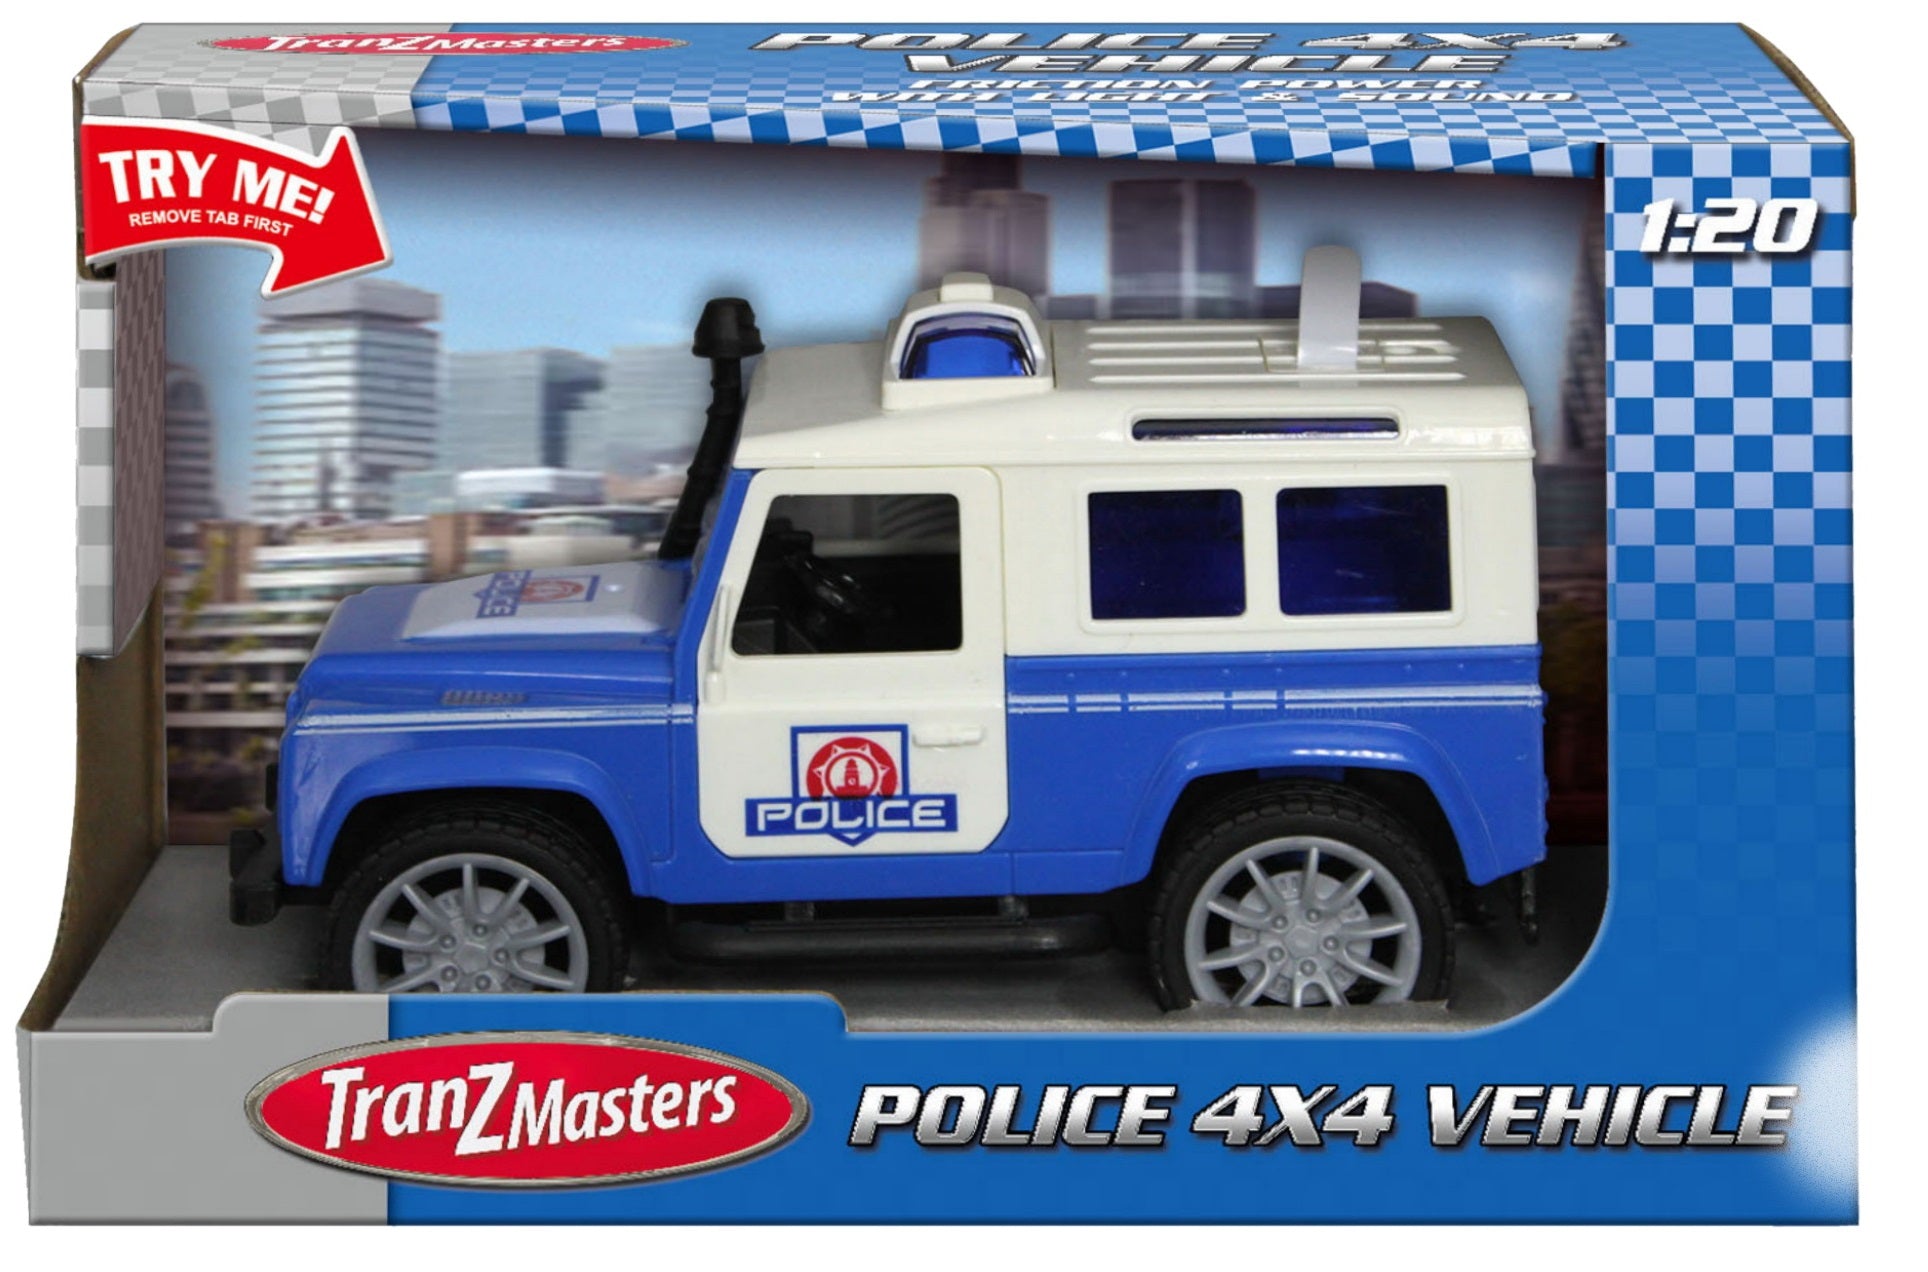 Kandytoys Tranzmasters Police 4x4 Vehicle